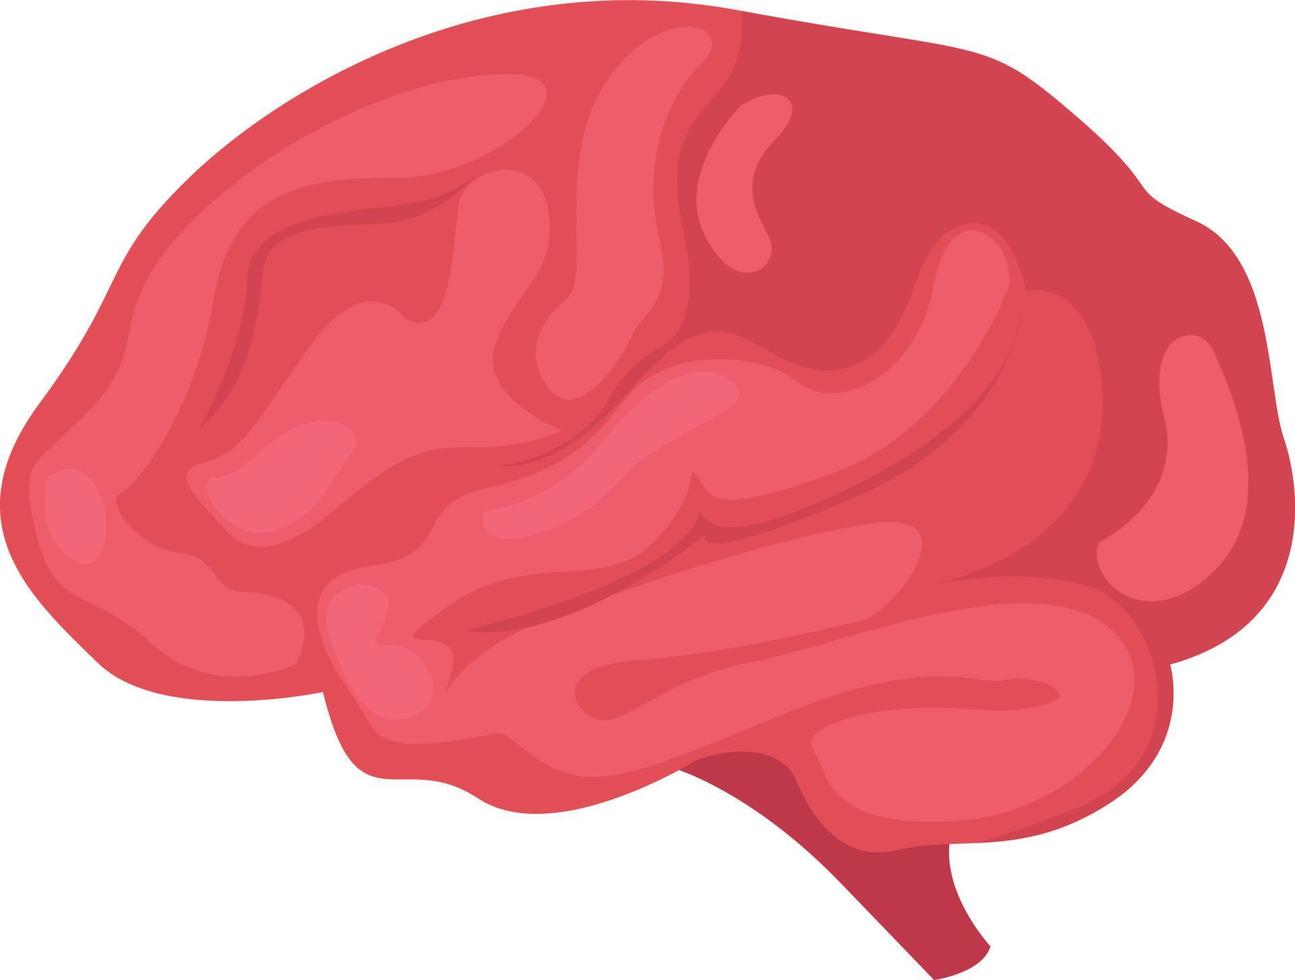 cerveau humain, illustration, vecteur sur fond blanc.